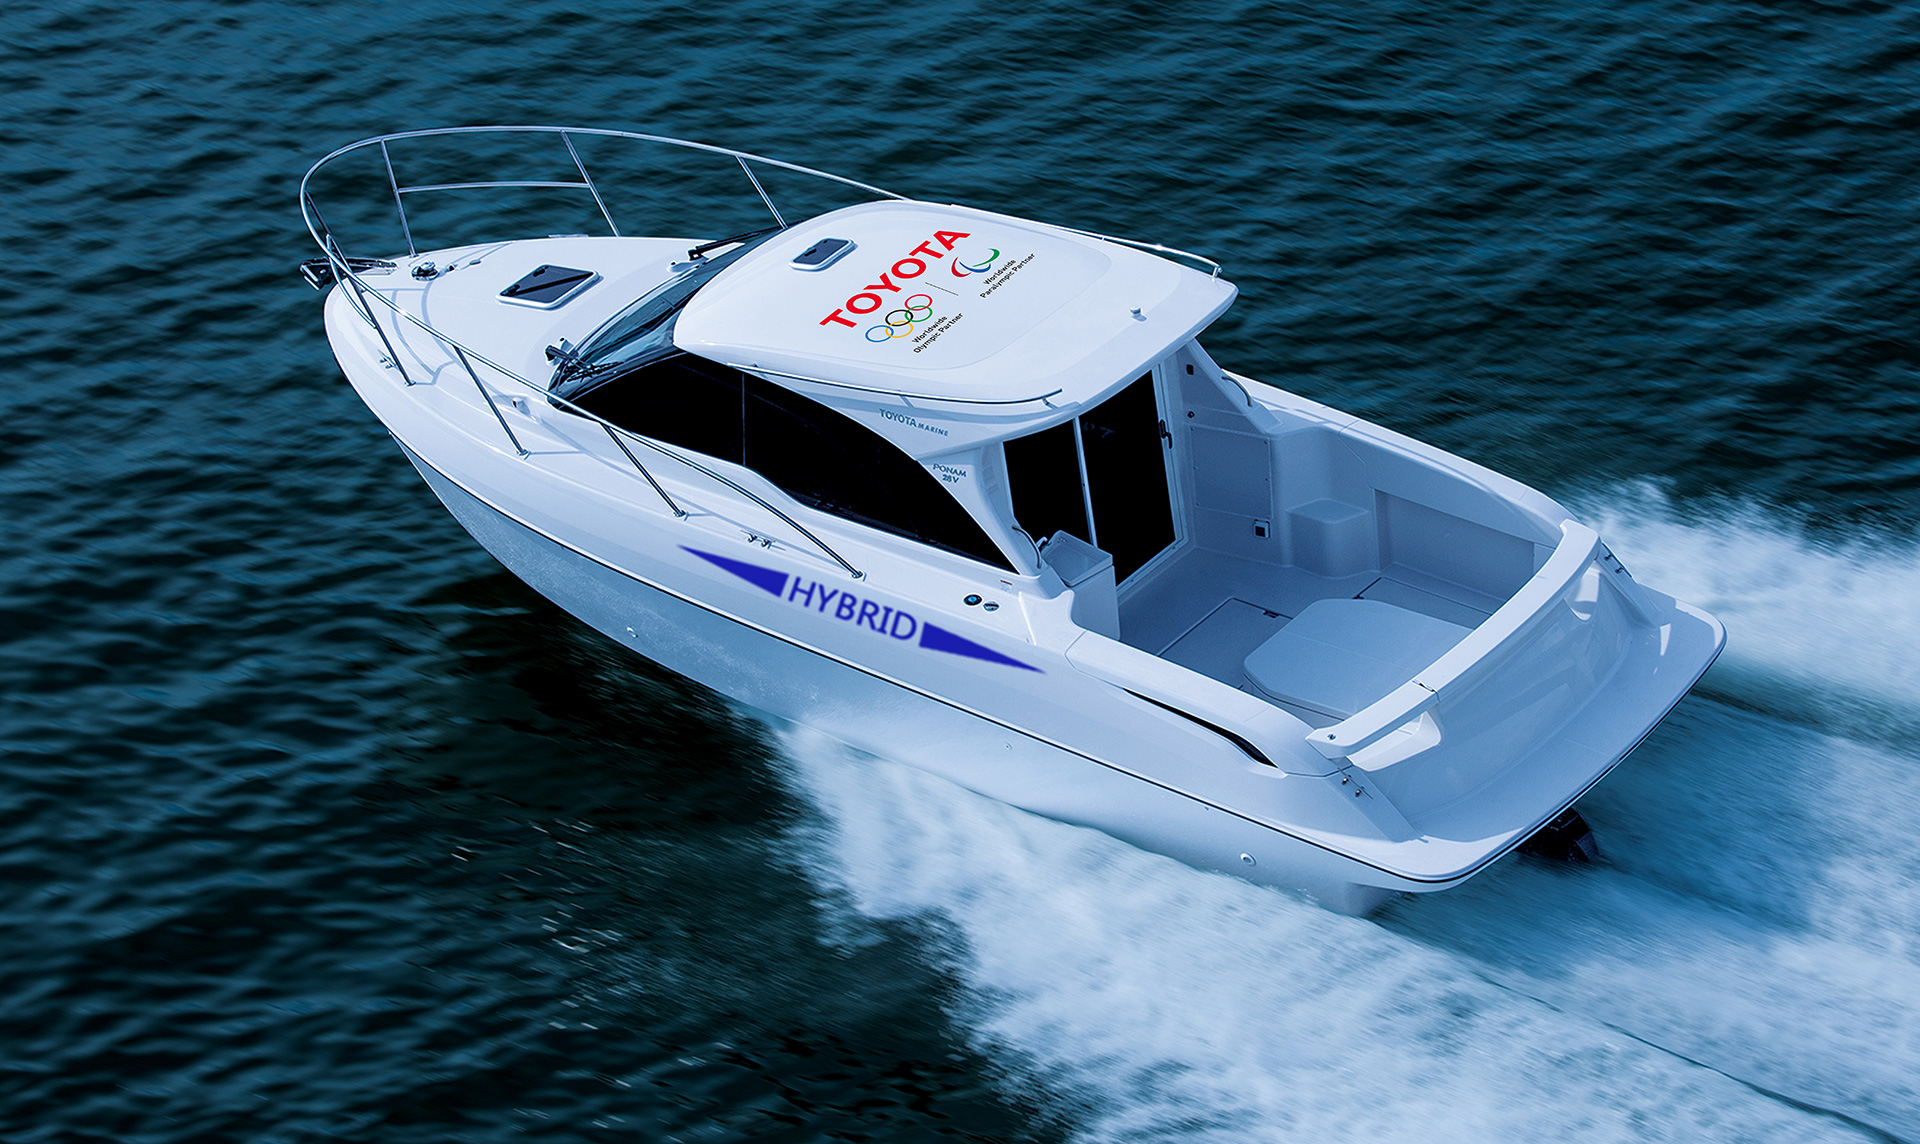 Hybrid Boat (Image)